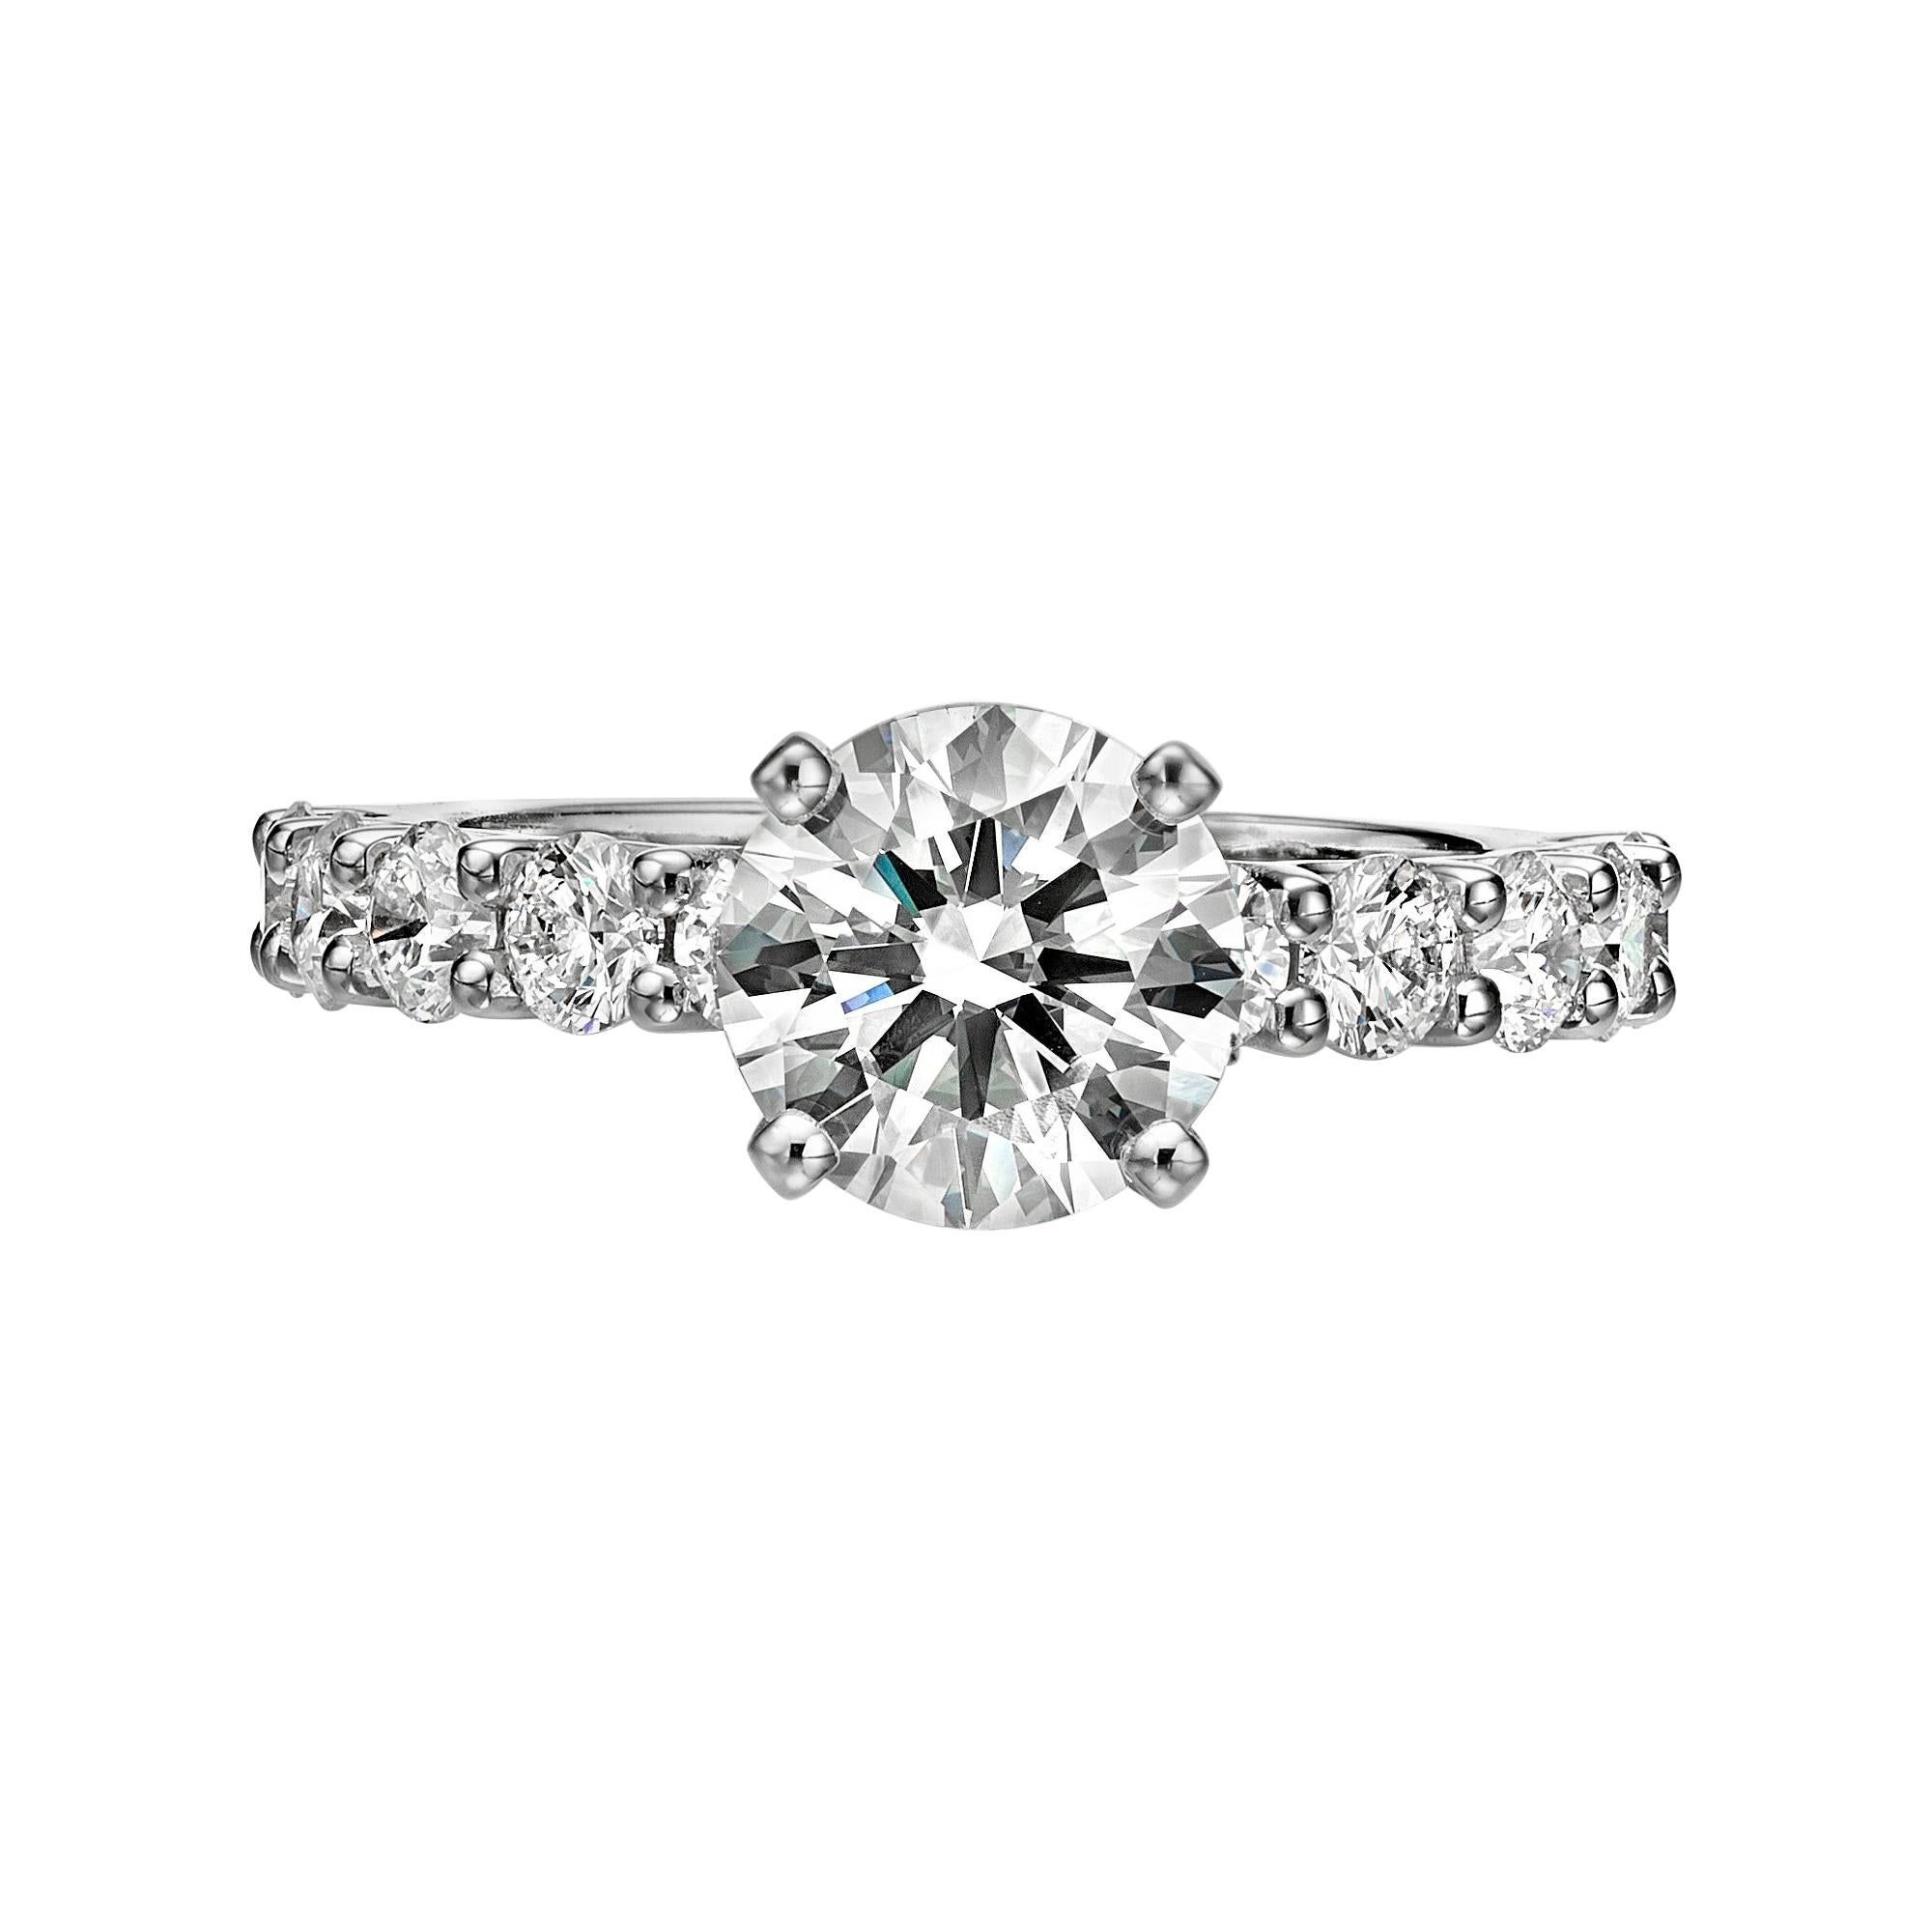 GIA Certified 1.77 Carat Diamond Engagement Ring G/ VVS1